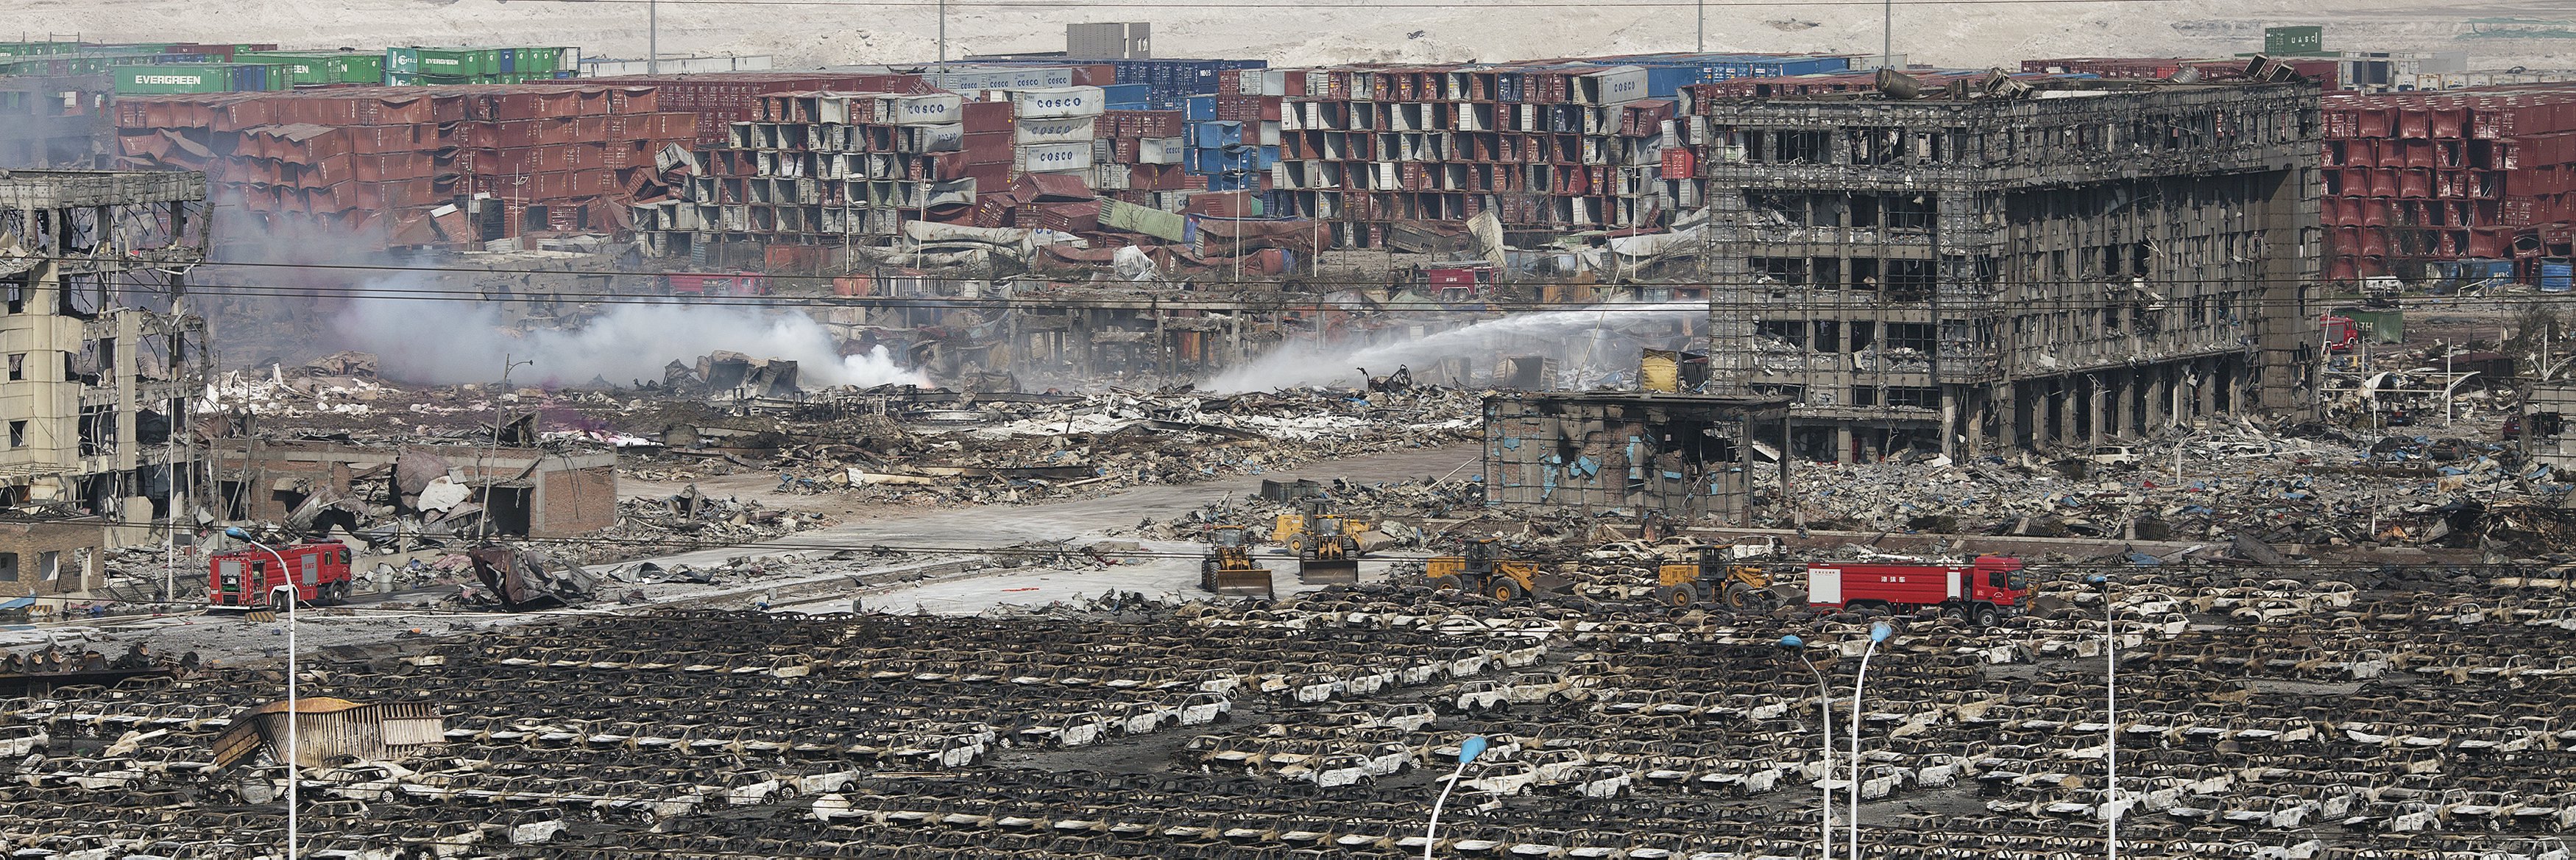 Hiện trường vụ nổ tại Thiên Tân - Ảnh: Reuters